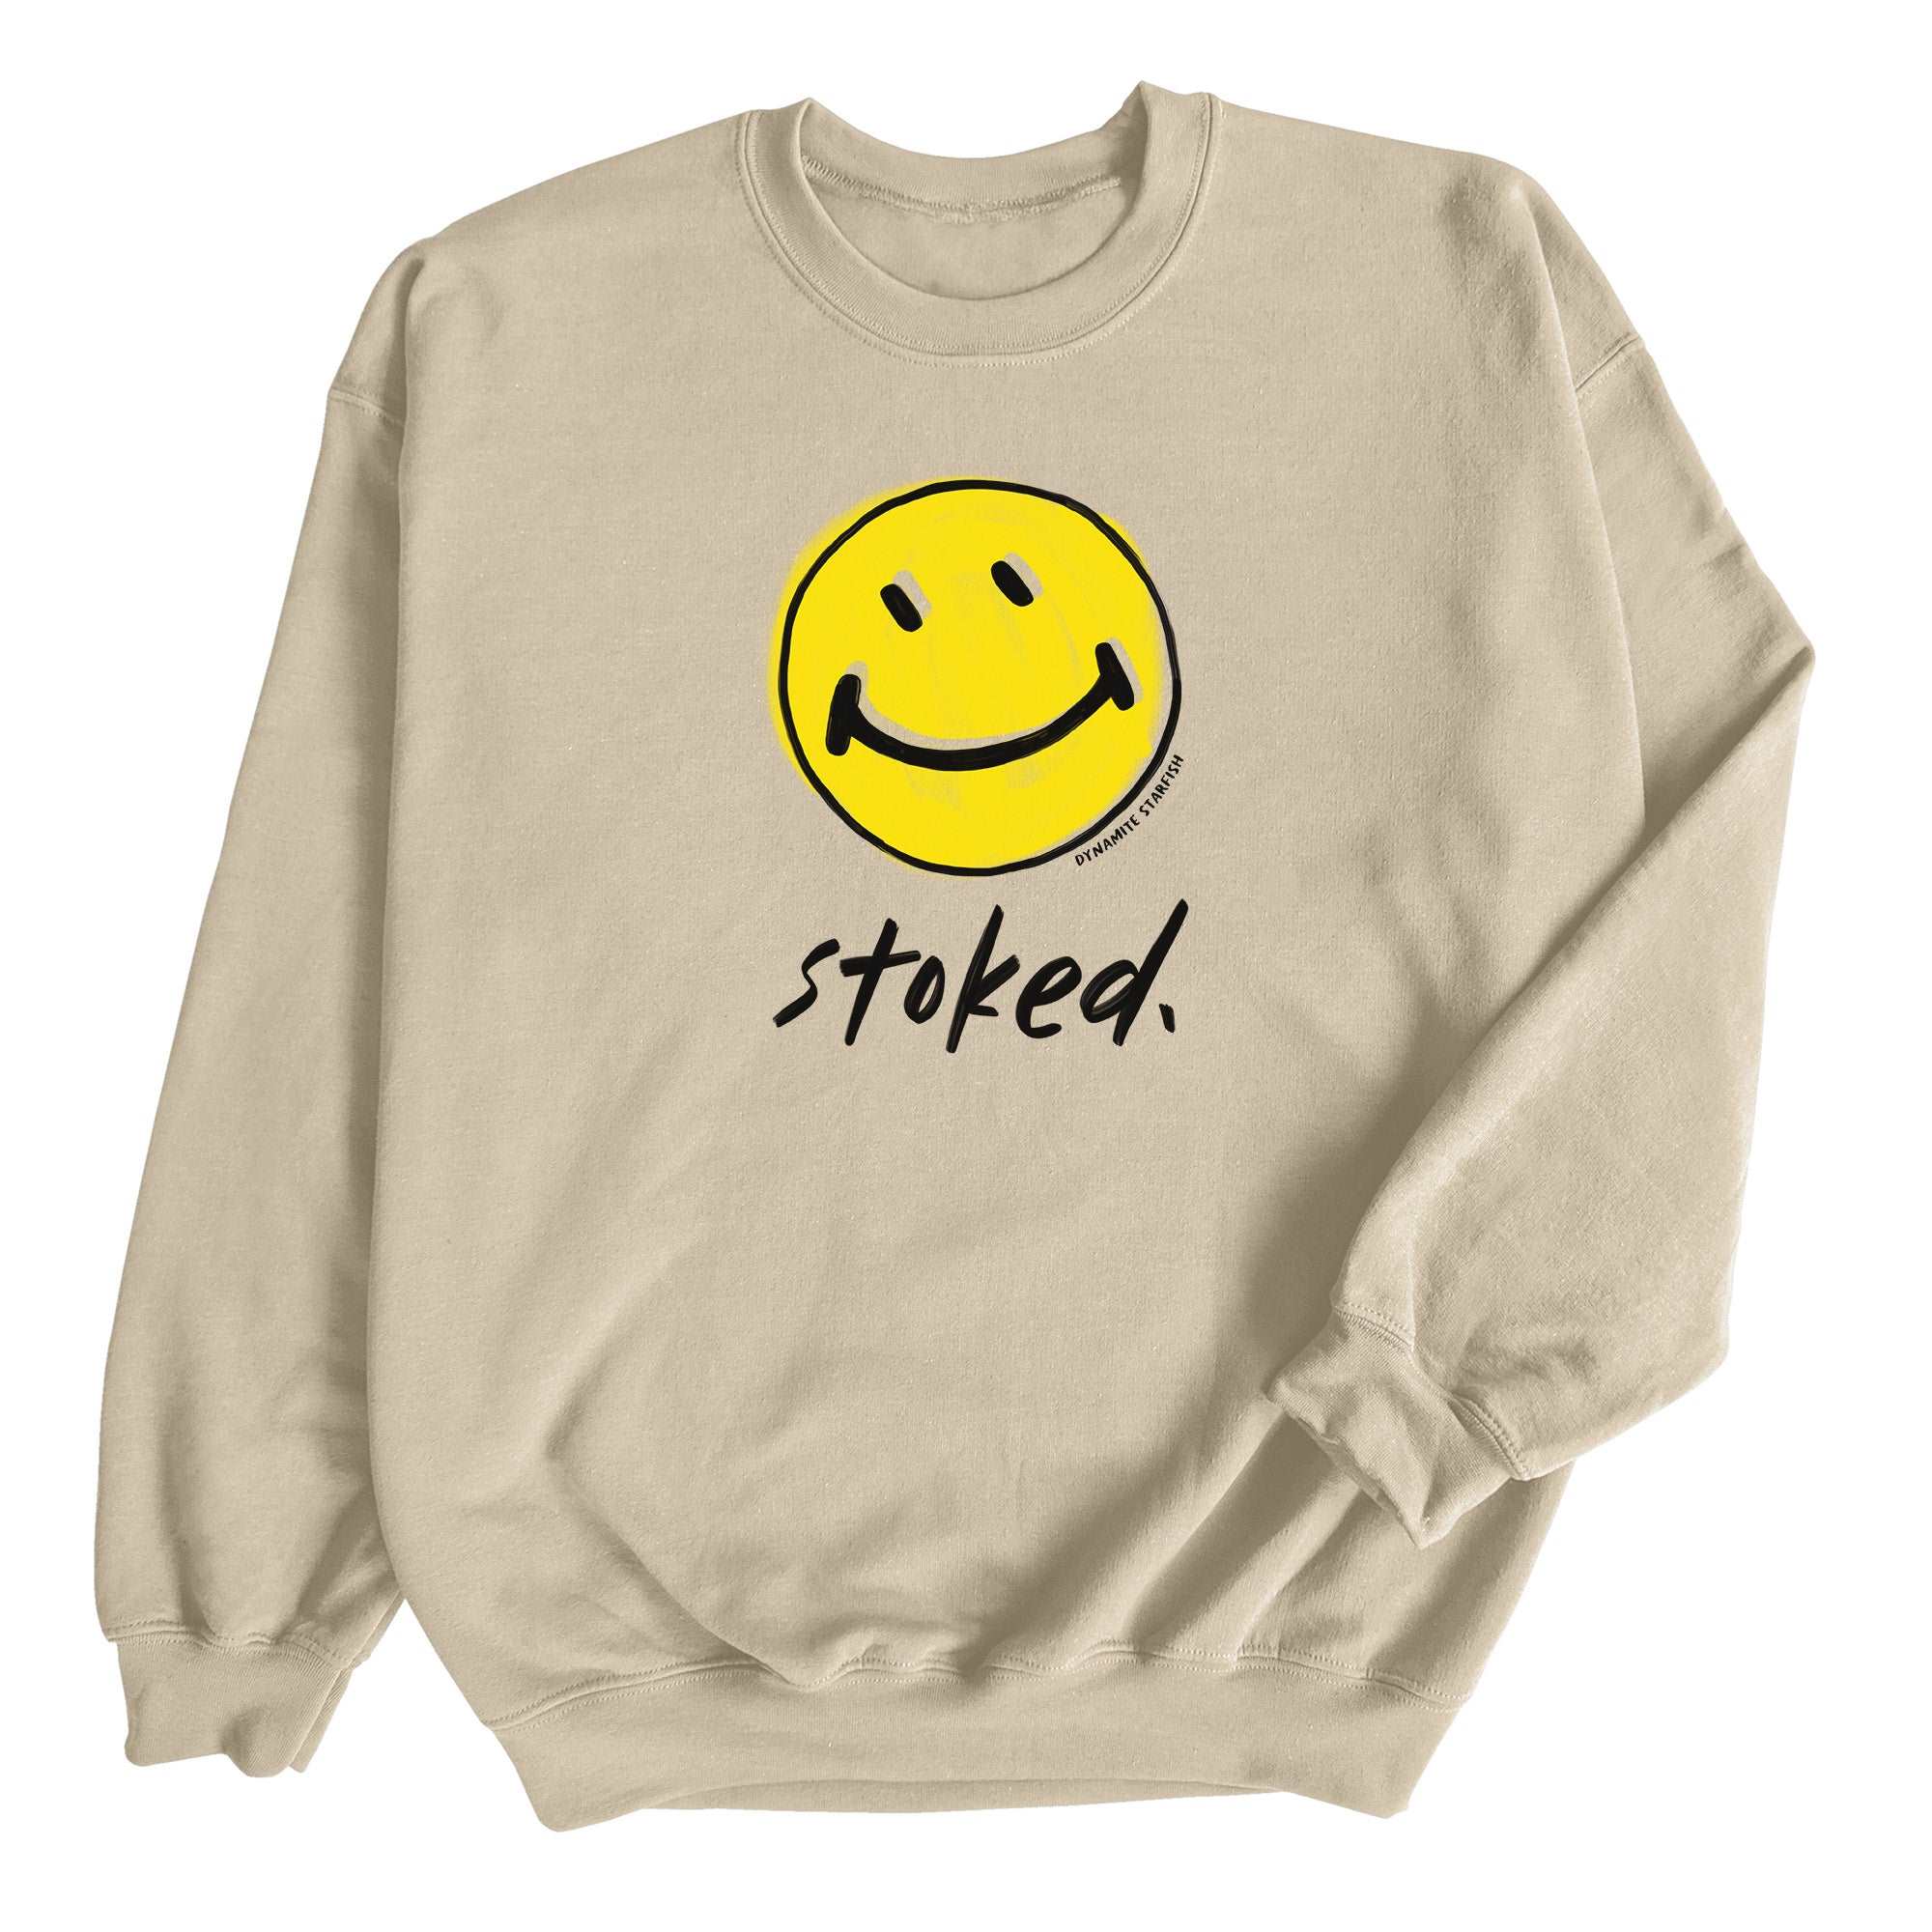 Stoked — Unisex Crewneck Sweatshirt